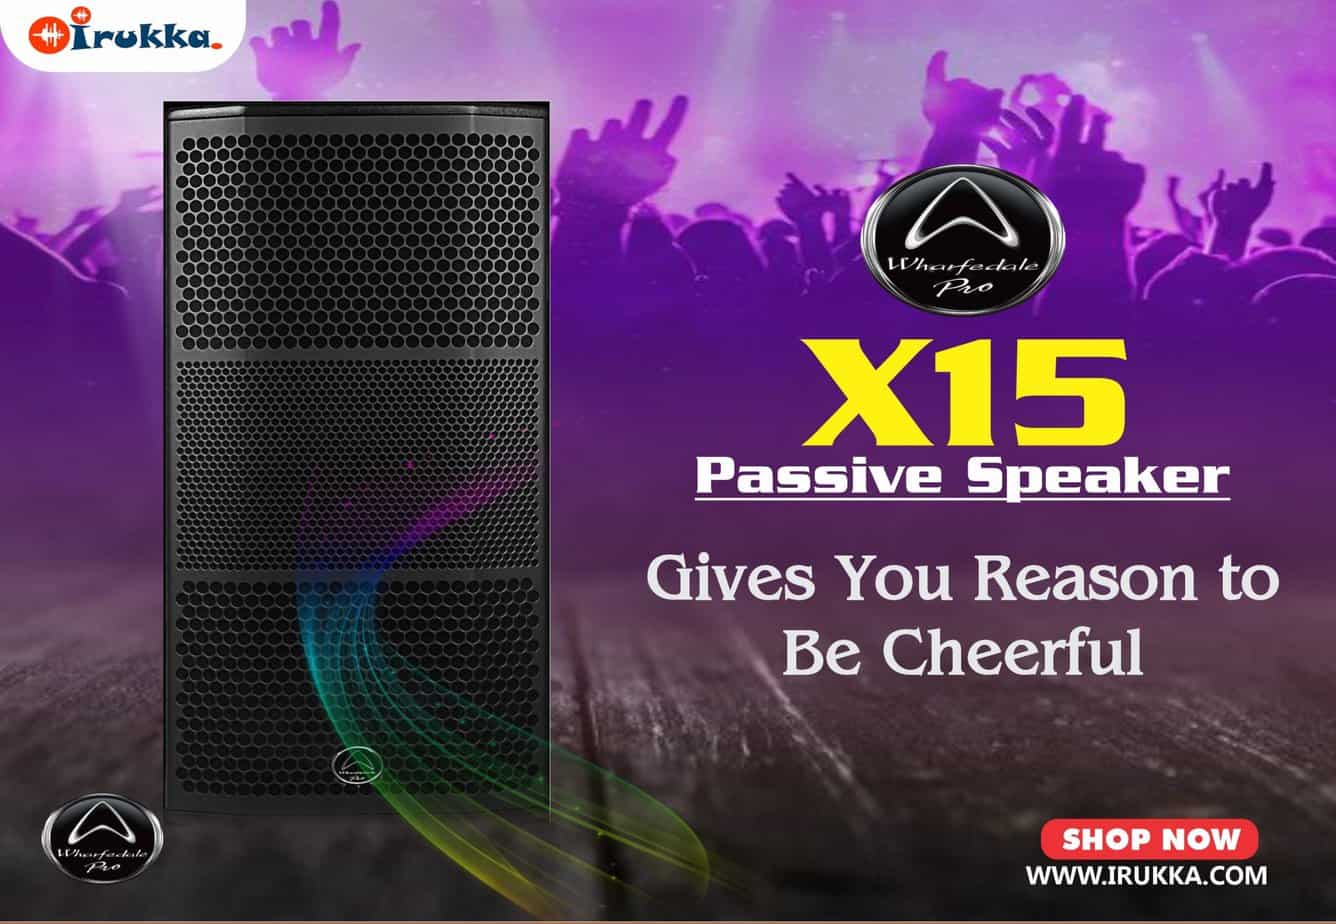 x15 givesa you reason to be cheerful